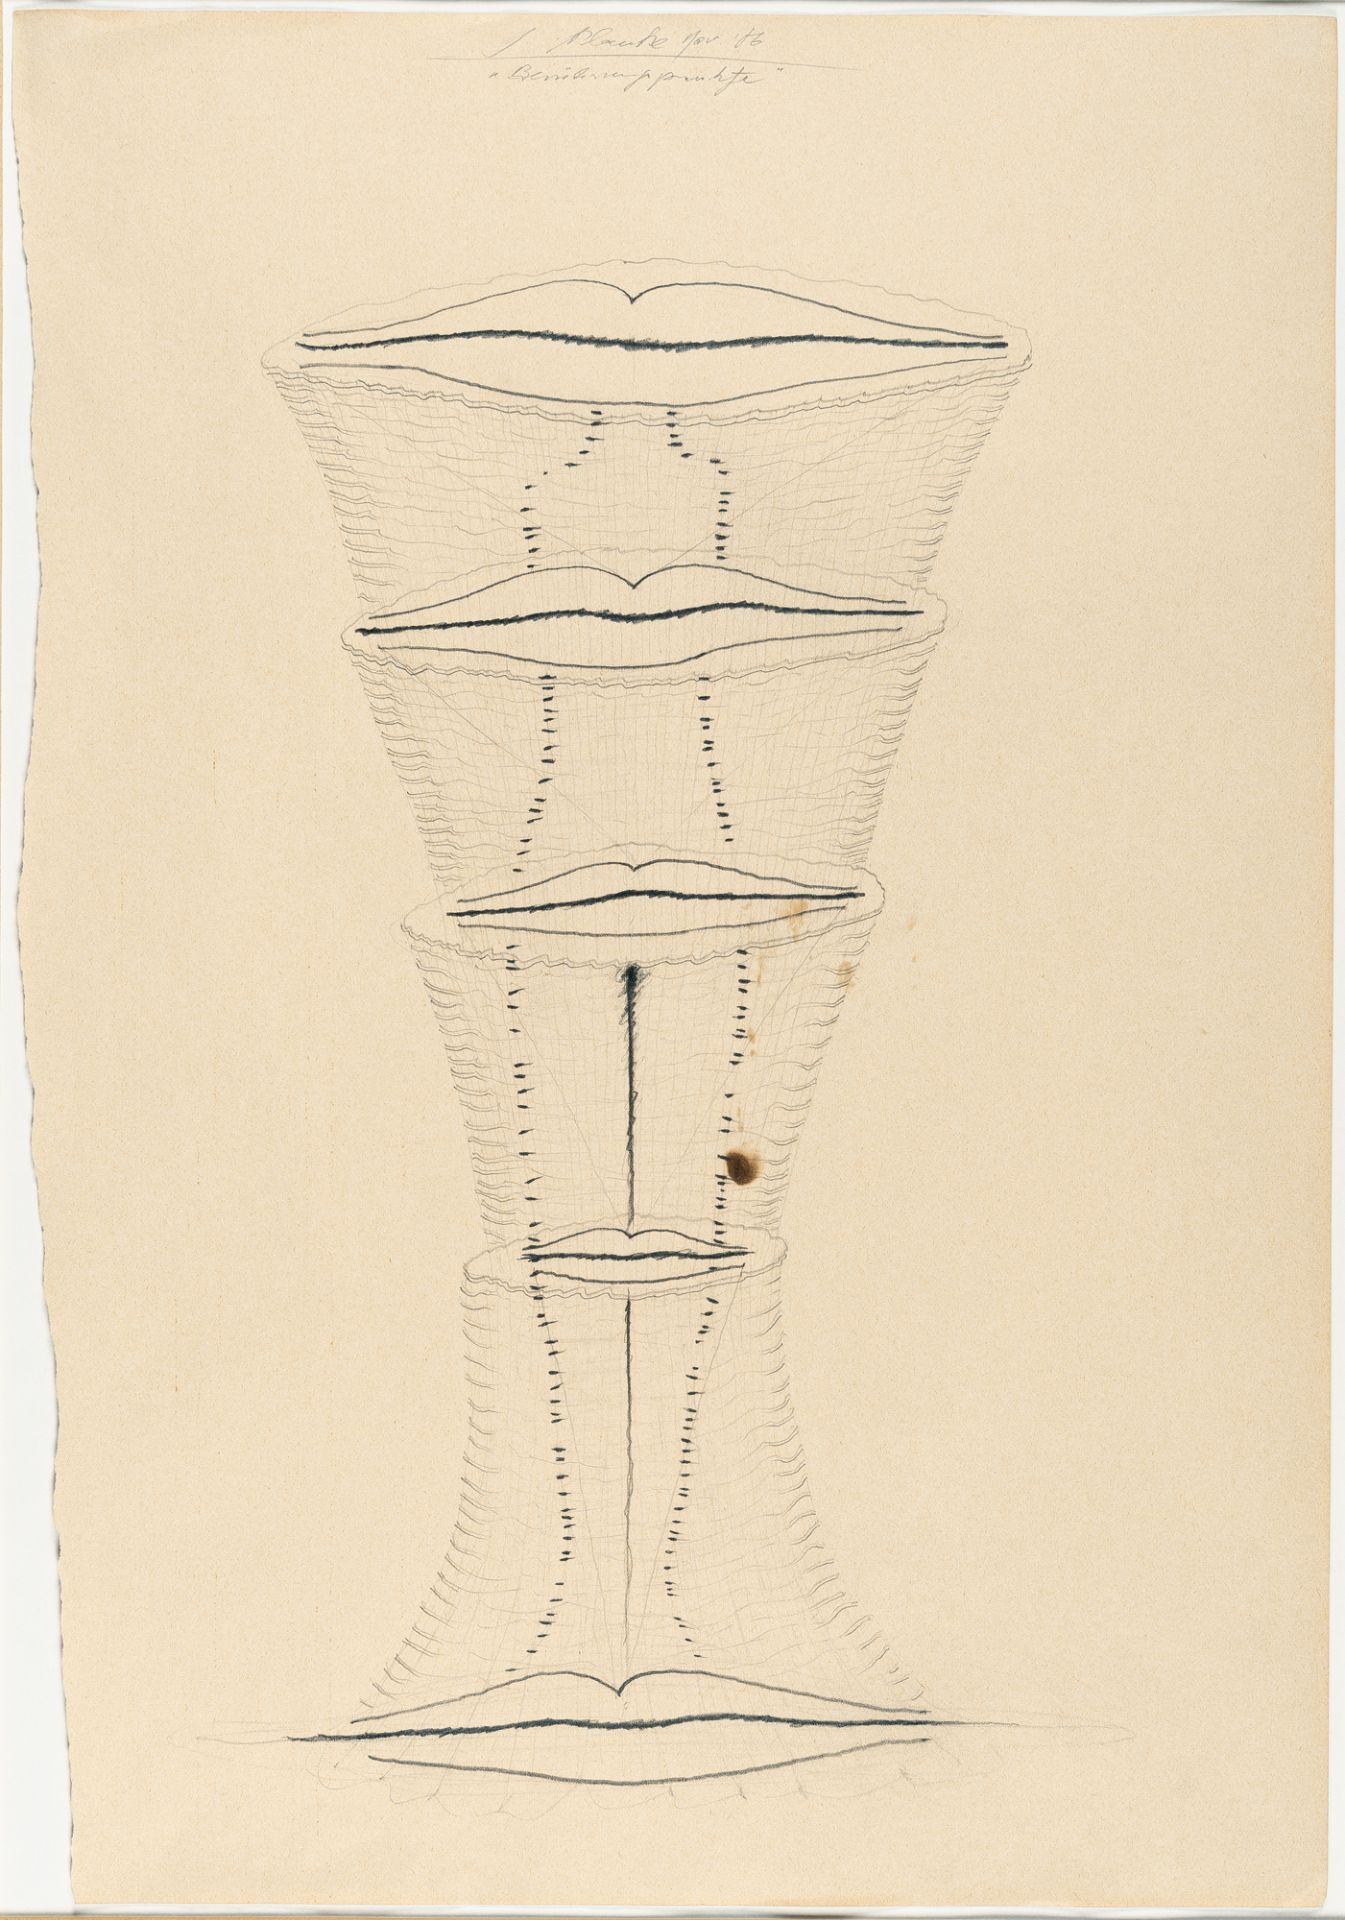 Jürgen Klauke (1943 Cochem), “Points of Contact”Pencil on laid paper. (19)86. Ca. 57 x 40 cm. - Image 2 of 4